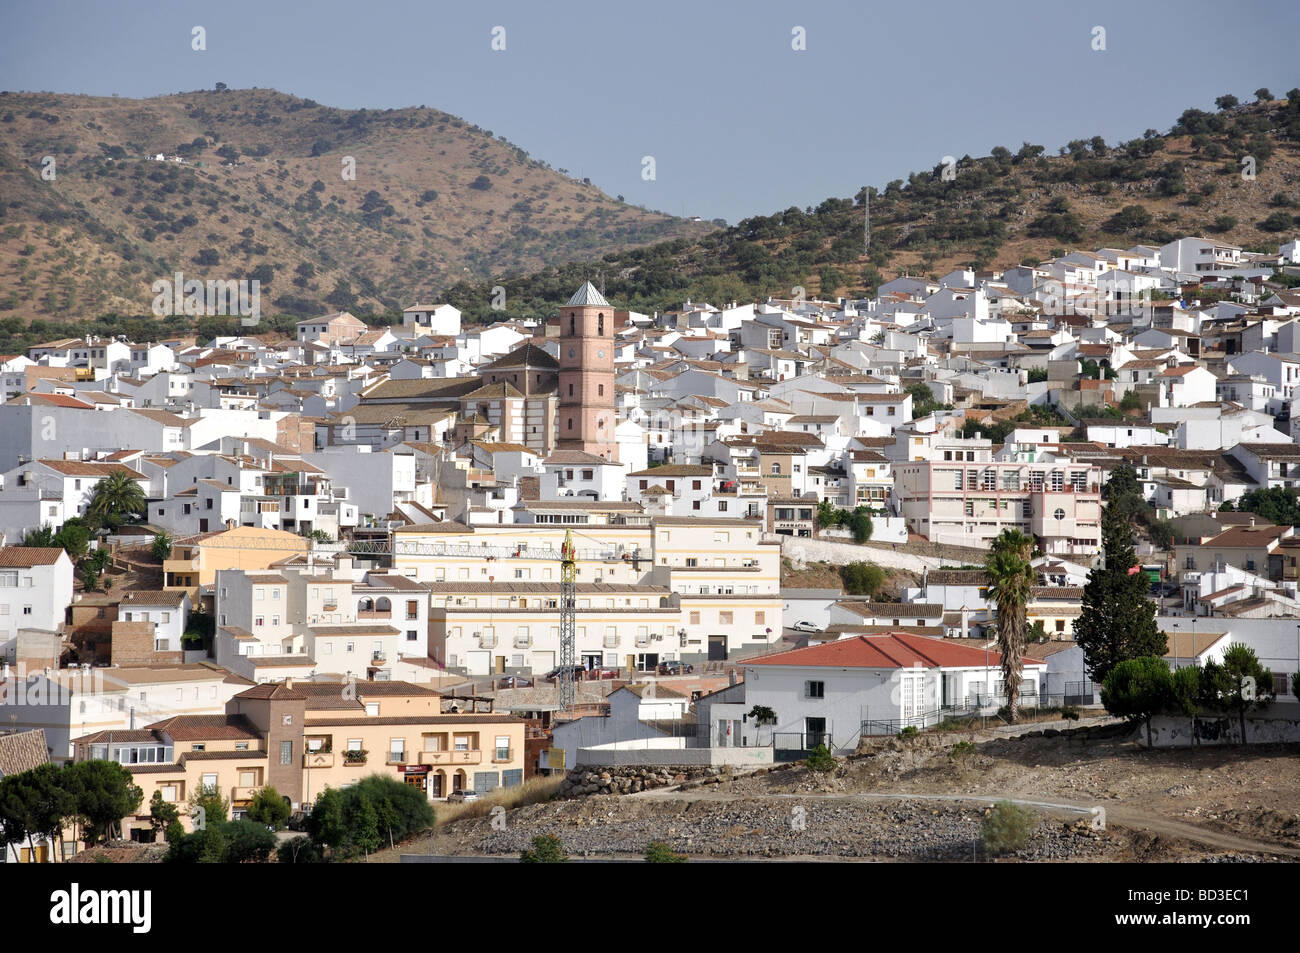 Casabermeja, Costa del Sol, Malaga Province, Andalusia, Spain Stock Photo